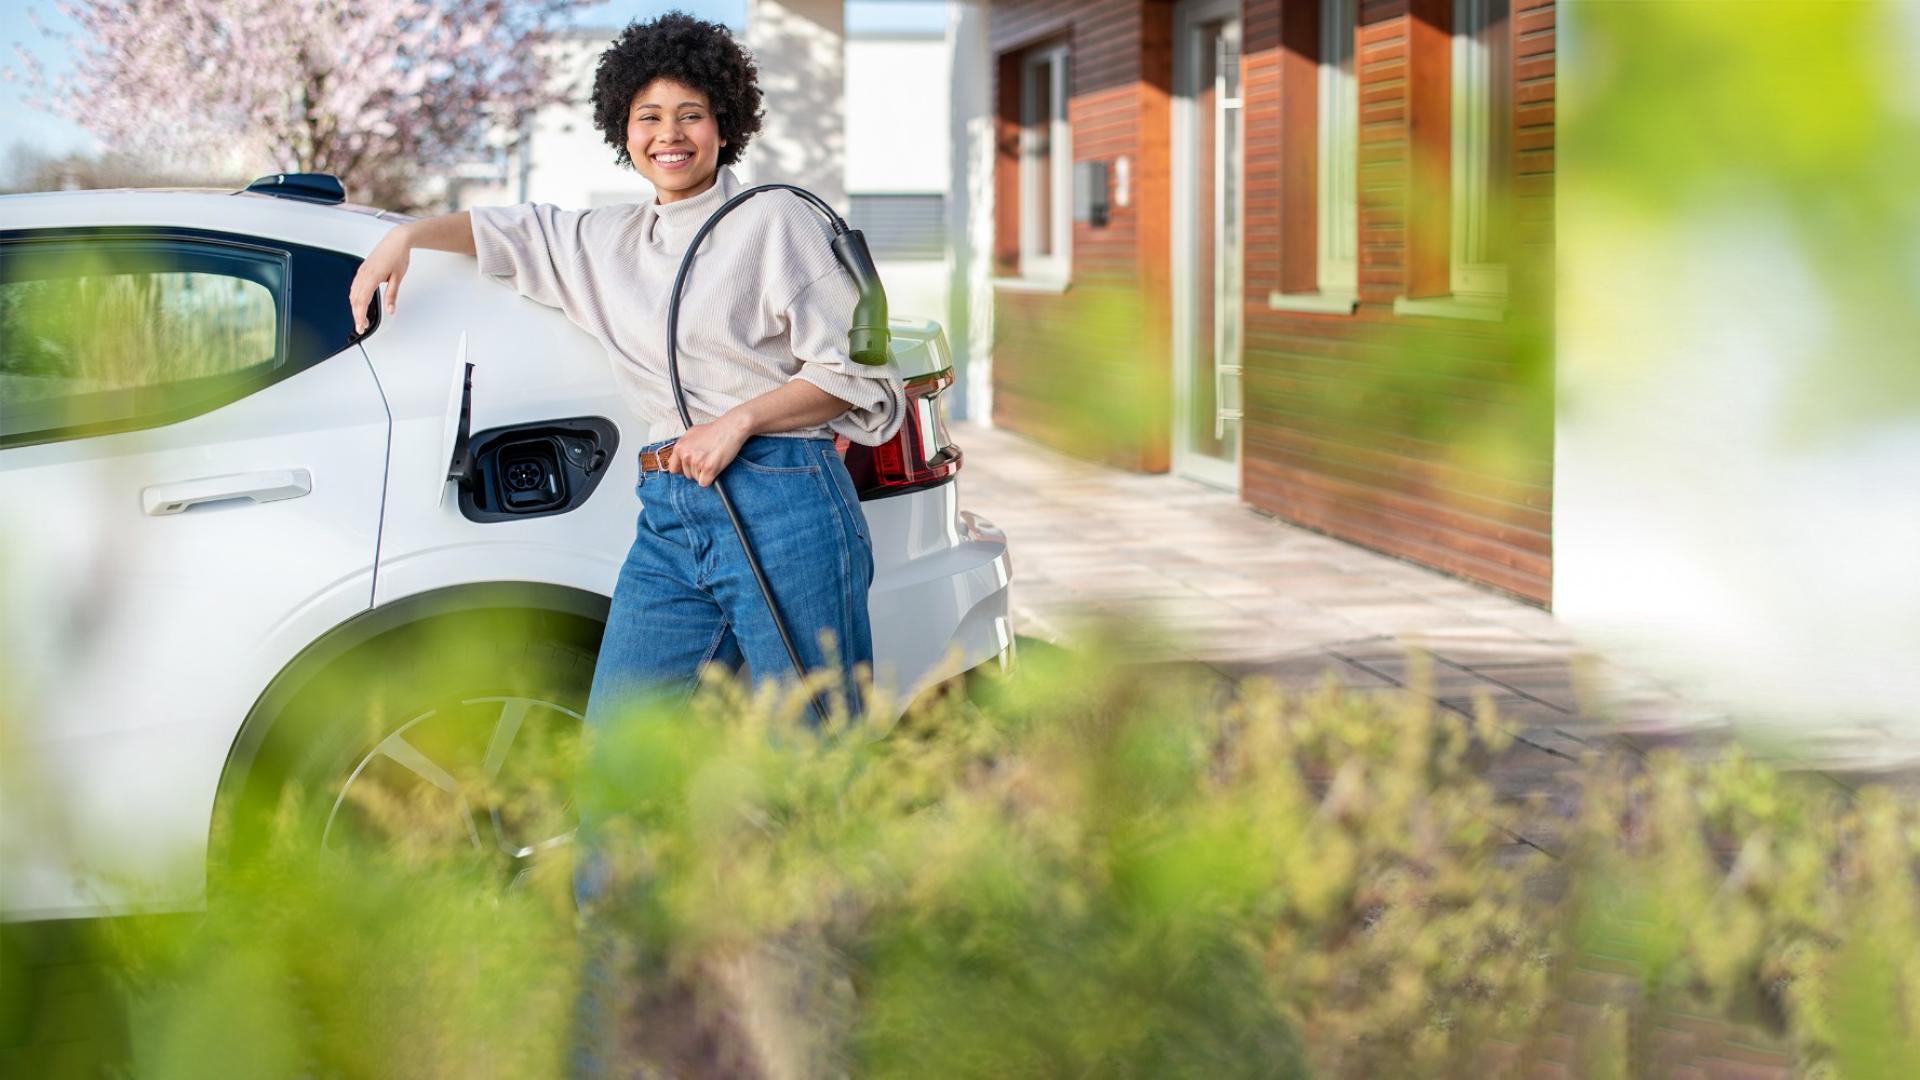 Auf dem Bild ist eine junge Frau vor ihrem E-Auto zu sehen, die gerade ein Ladekabel in der Hand hält, um ihr Elektroauto aufzuladen.